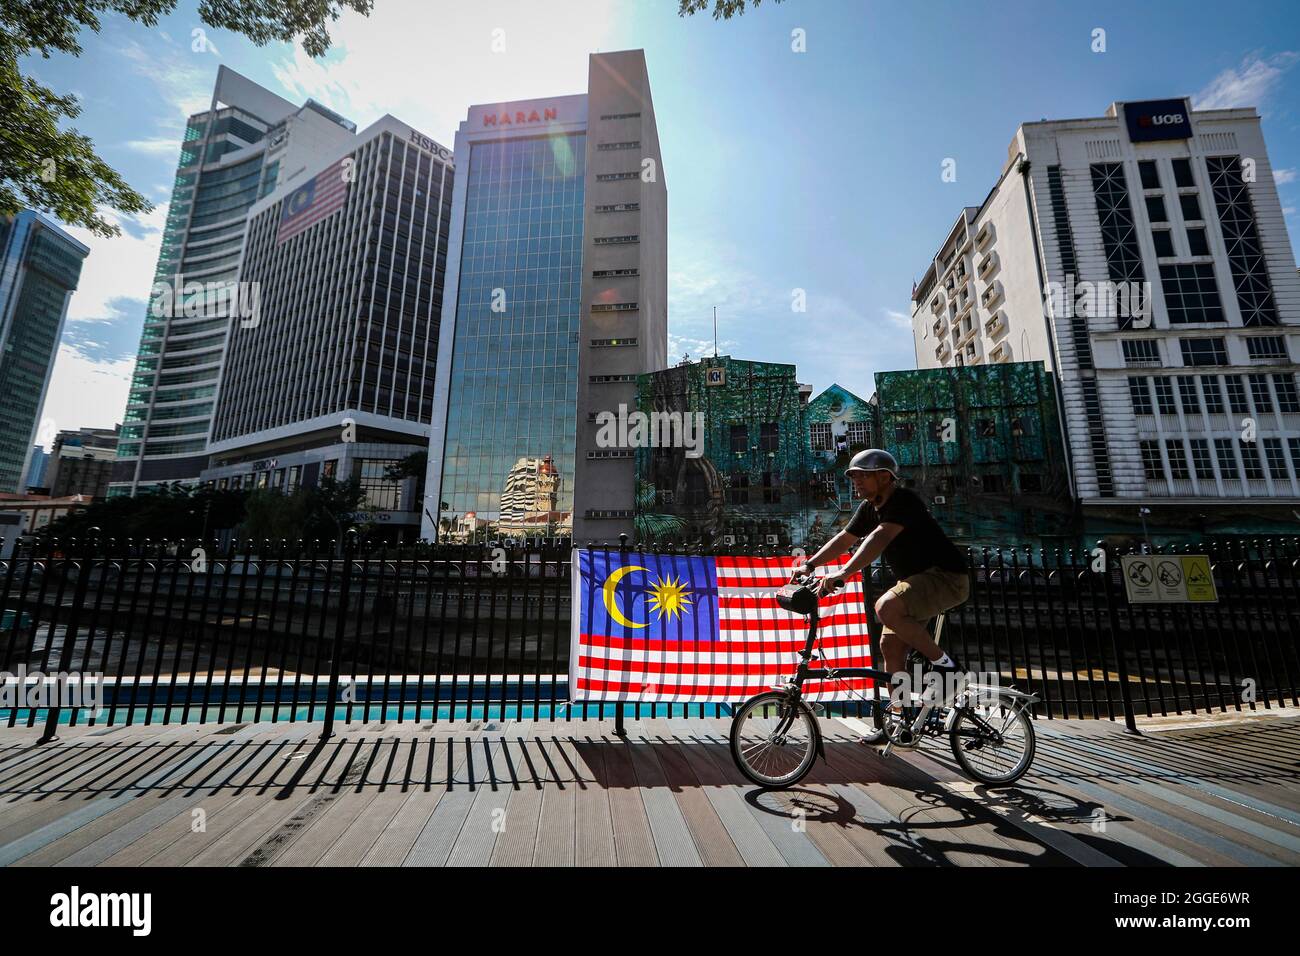 Un cycliste passe devant un drapeau malaisien lors des célébrations de la 64e journée nationale à Kuala Lumpur.la Malaisie célèbre chaque année son 64ème jour de l'indépendance le 31 août, elle commémore la Déclaration d'indépendance de Malaisie du 31 août 1957. (Photo de Wong Fok Loy / SOPA Images/Sipa USA) Banque D'Images